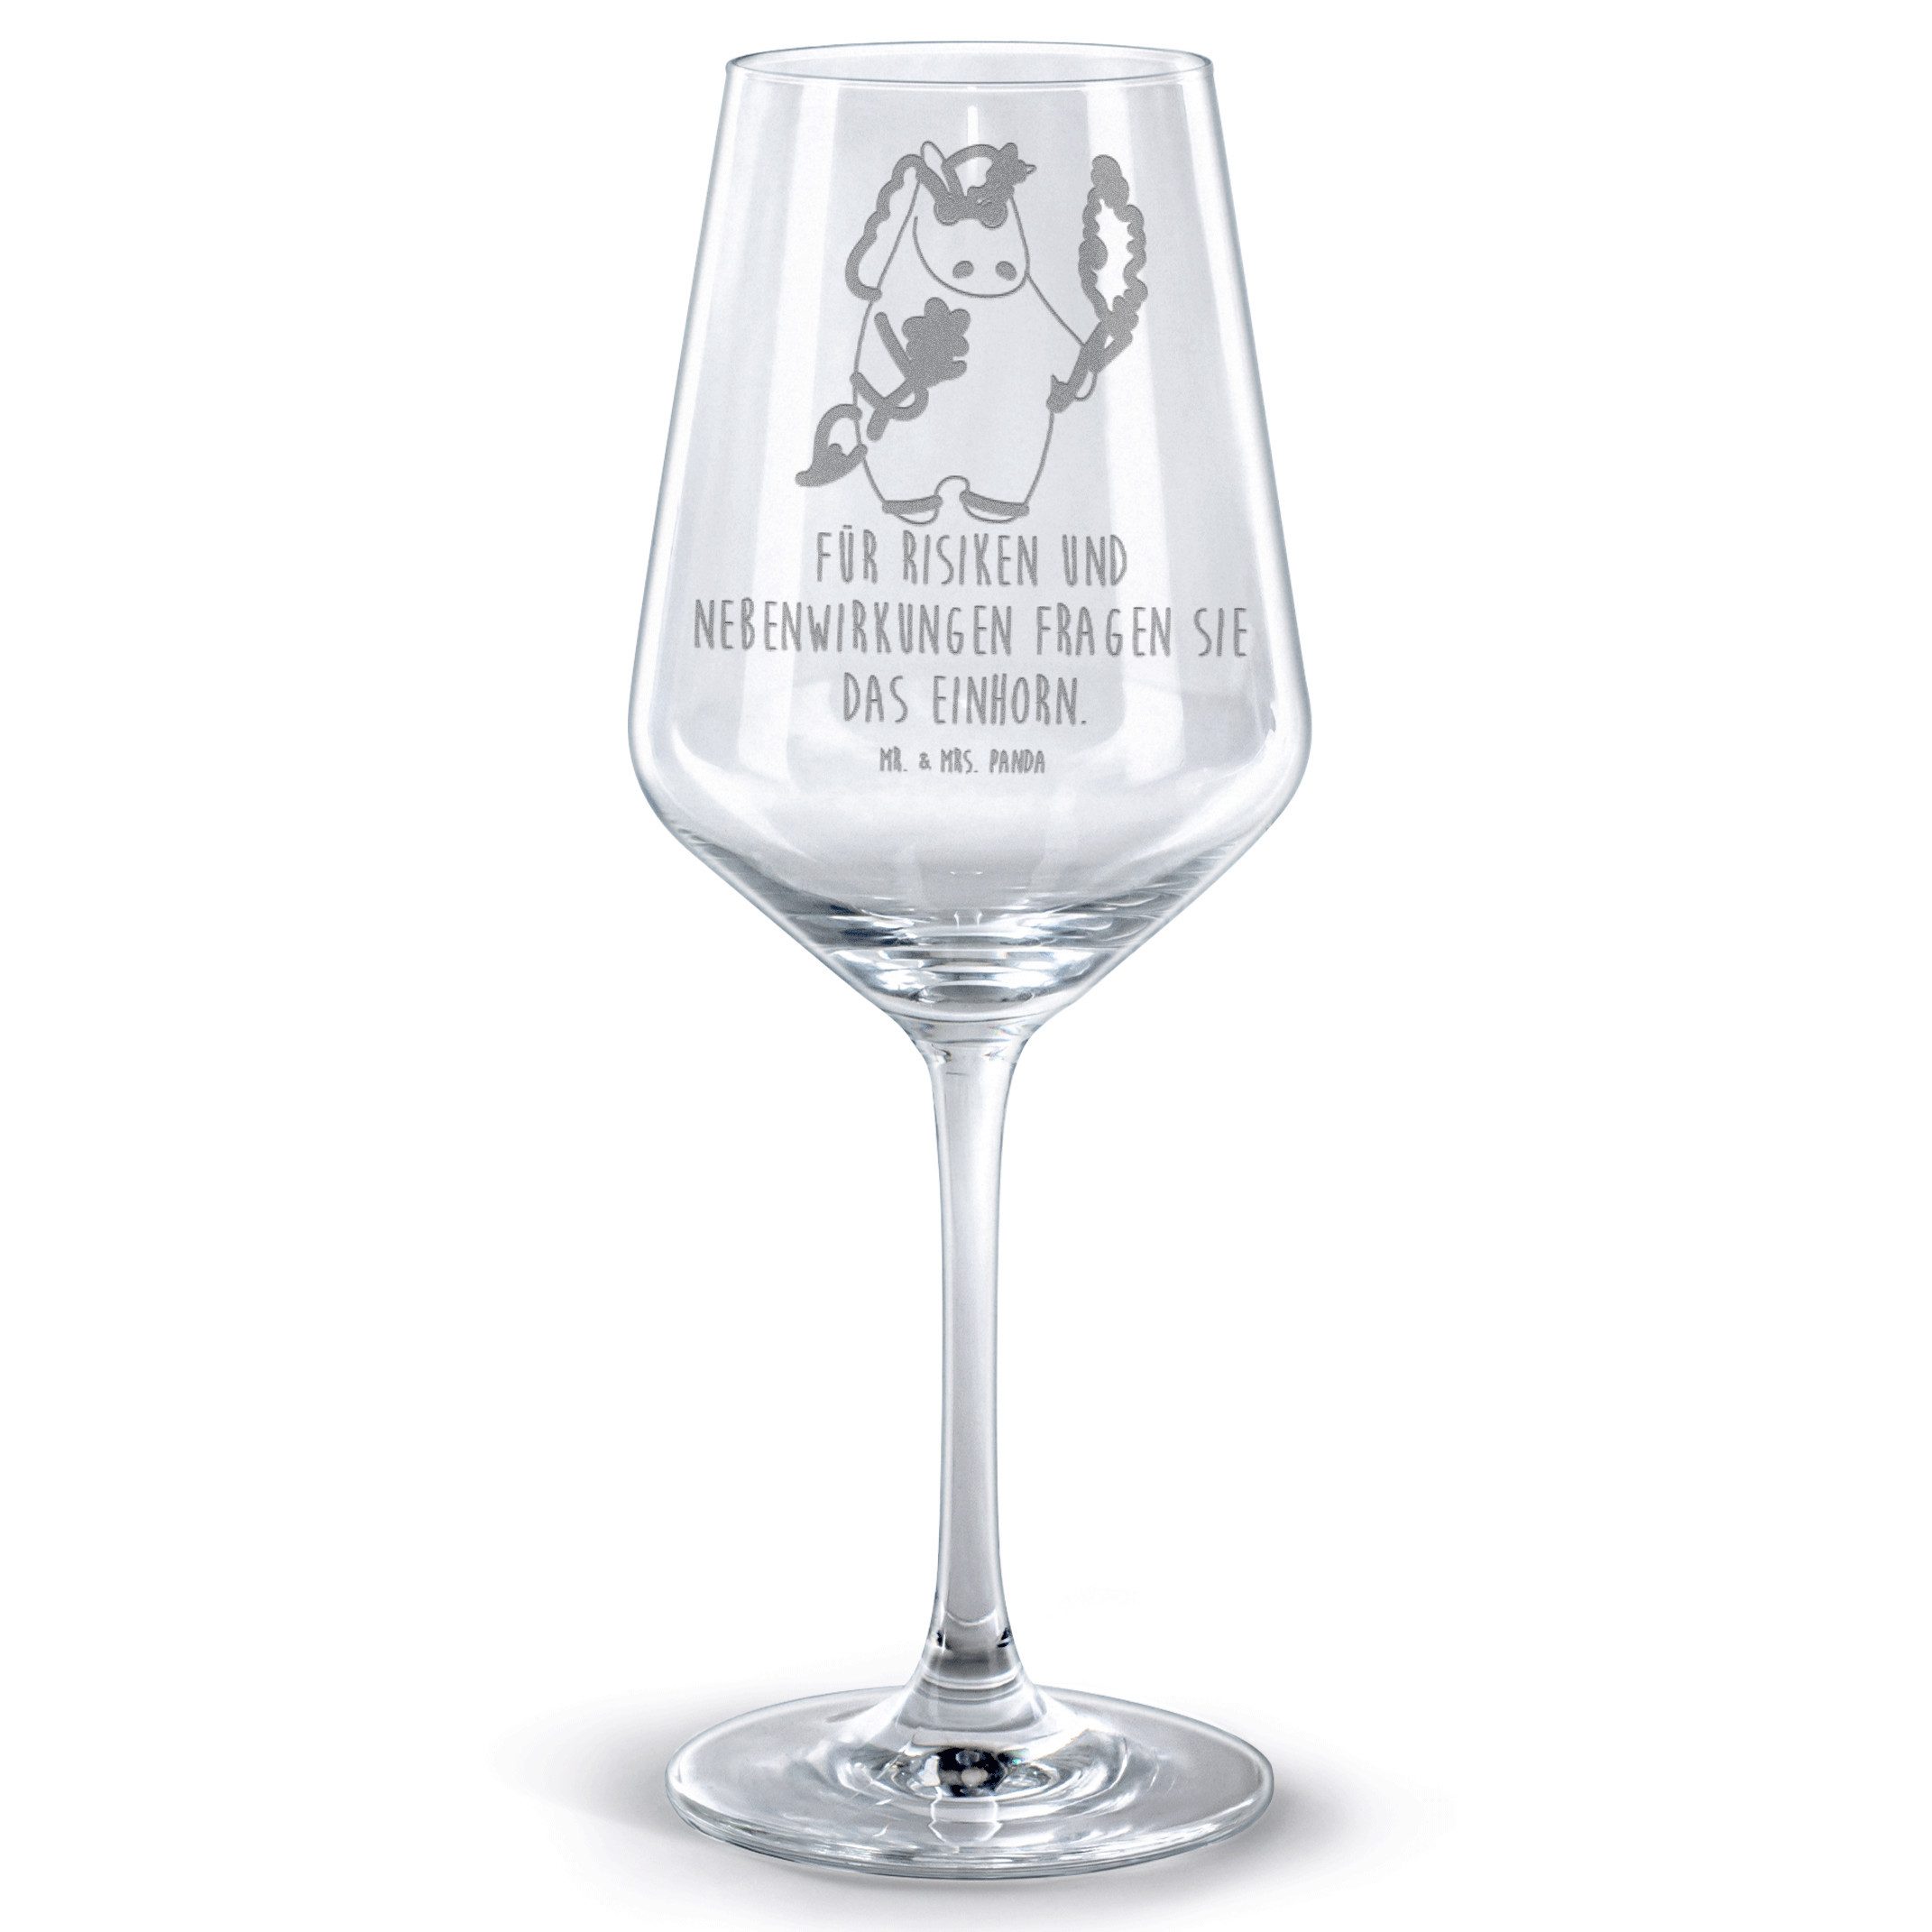 Mr. & Mrs. Panda Rotweinglas Einhorn Woodstock - Transparent - Geschenk, Hochwertige Weinaccessoir, Premium Glas, Spülmaschinenfest